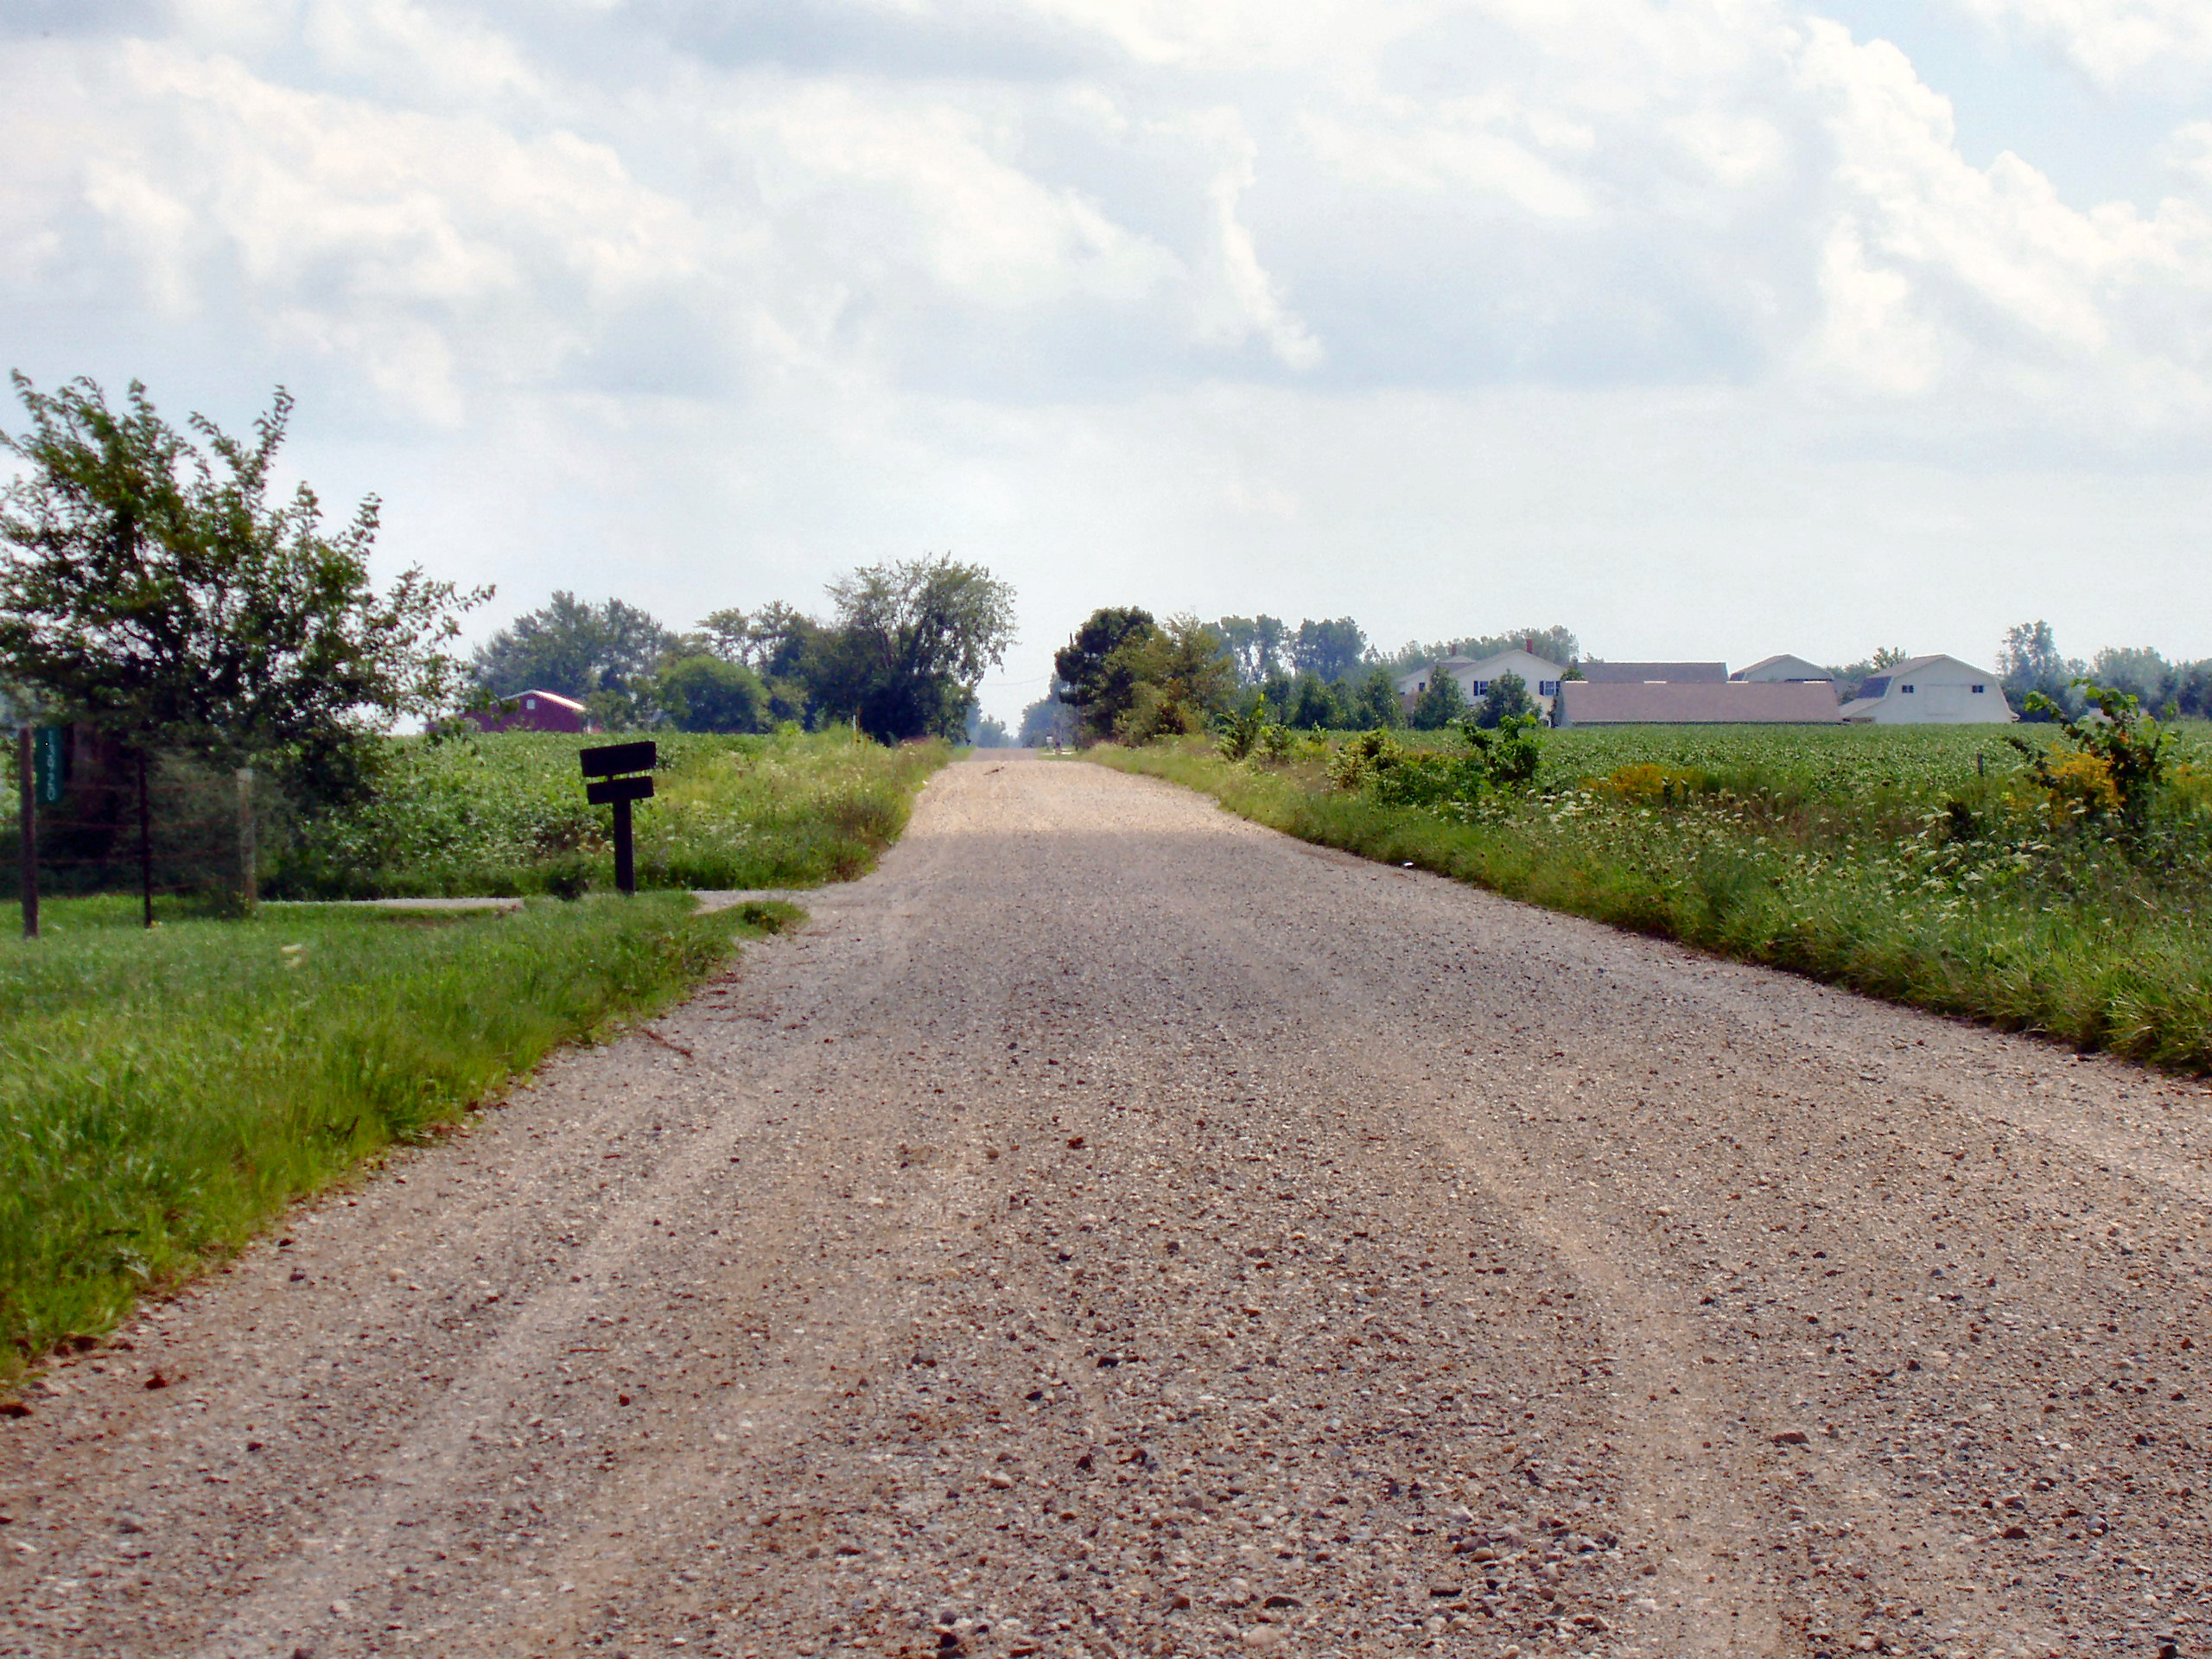 Rural road photo